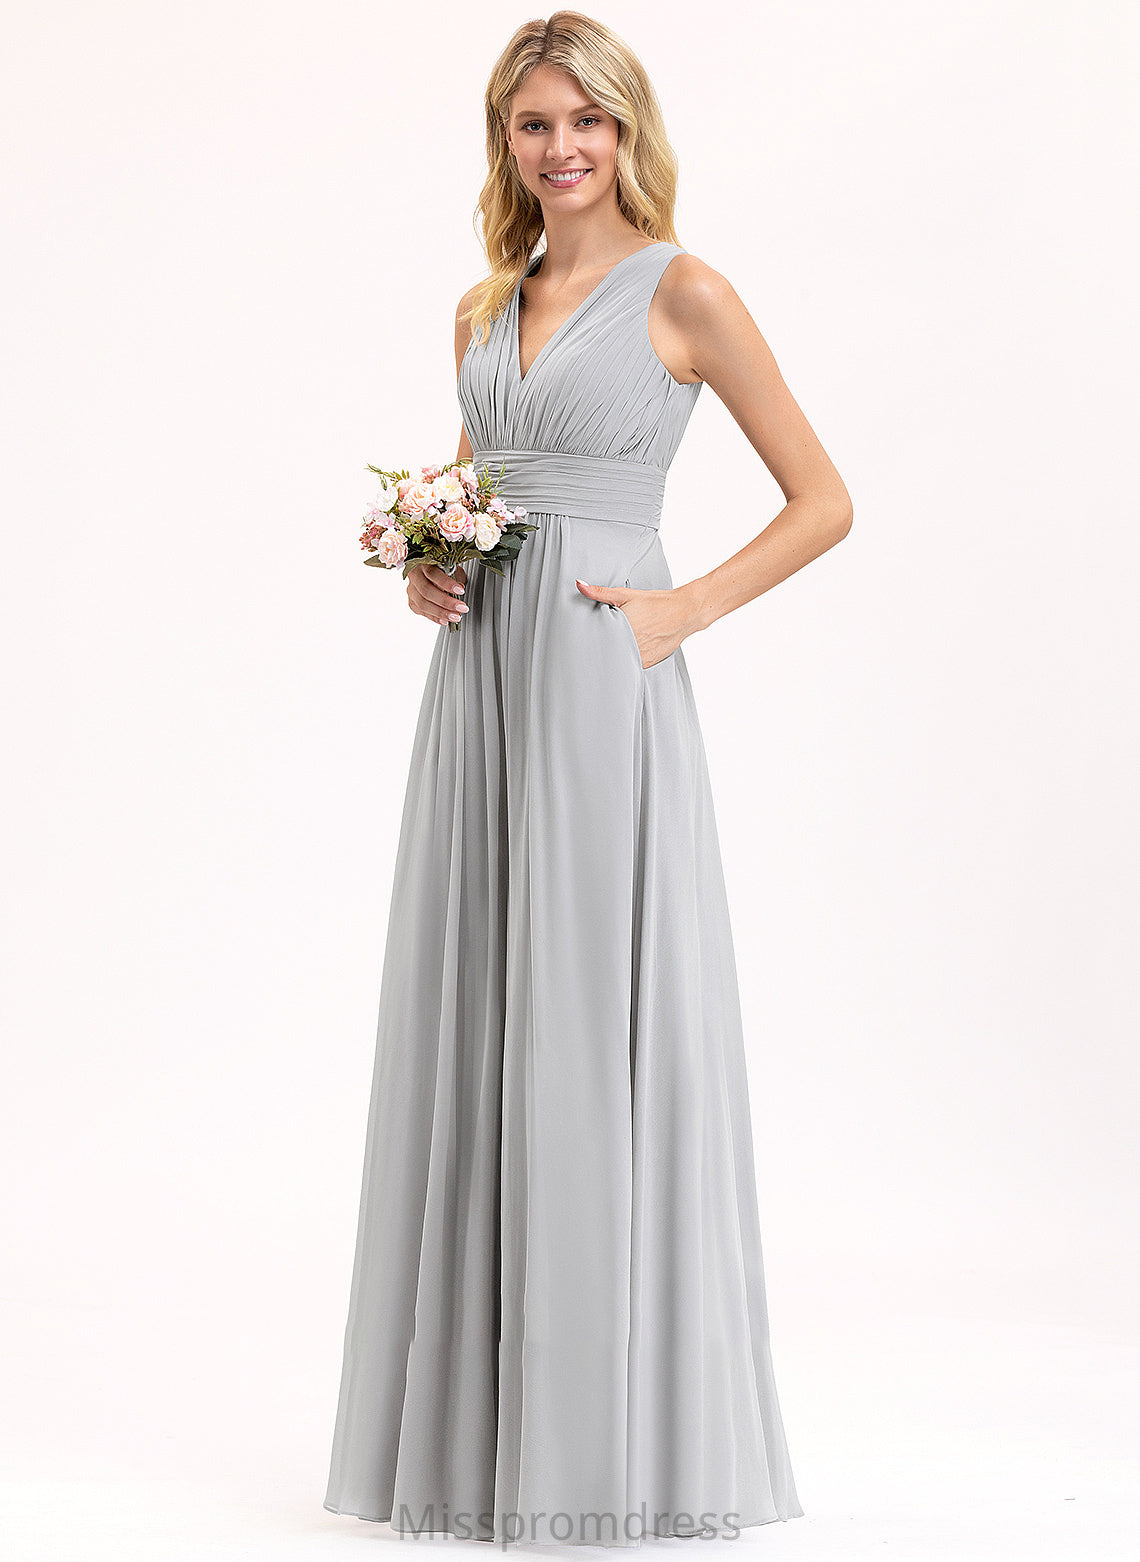 Fabric Bow(s) Silhouette Floor-Length Pockets Length V-neck Neckline Embellishment Ruffle A-Line Amanda Bridesmaid Dresses